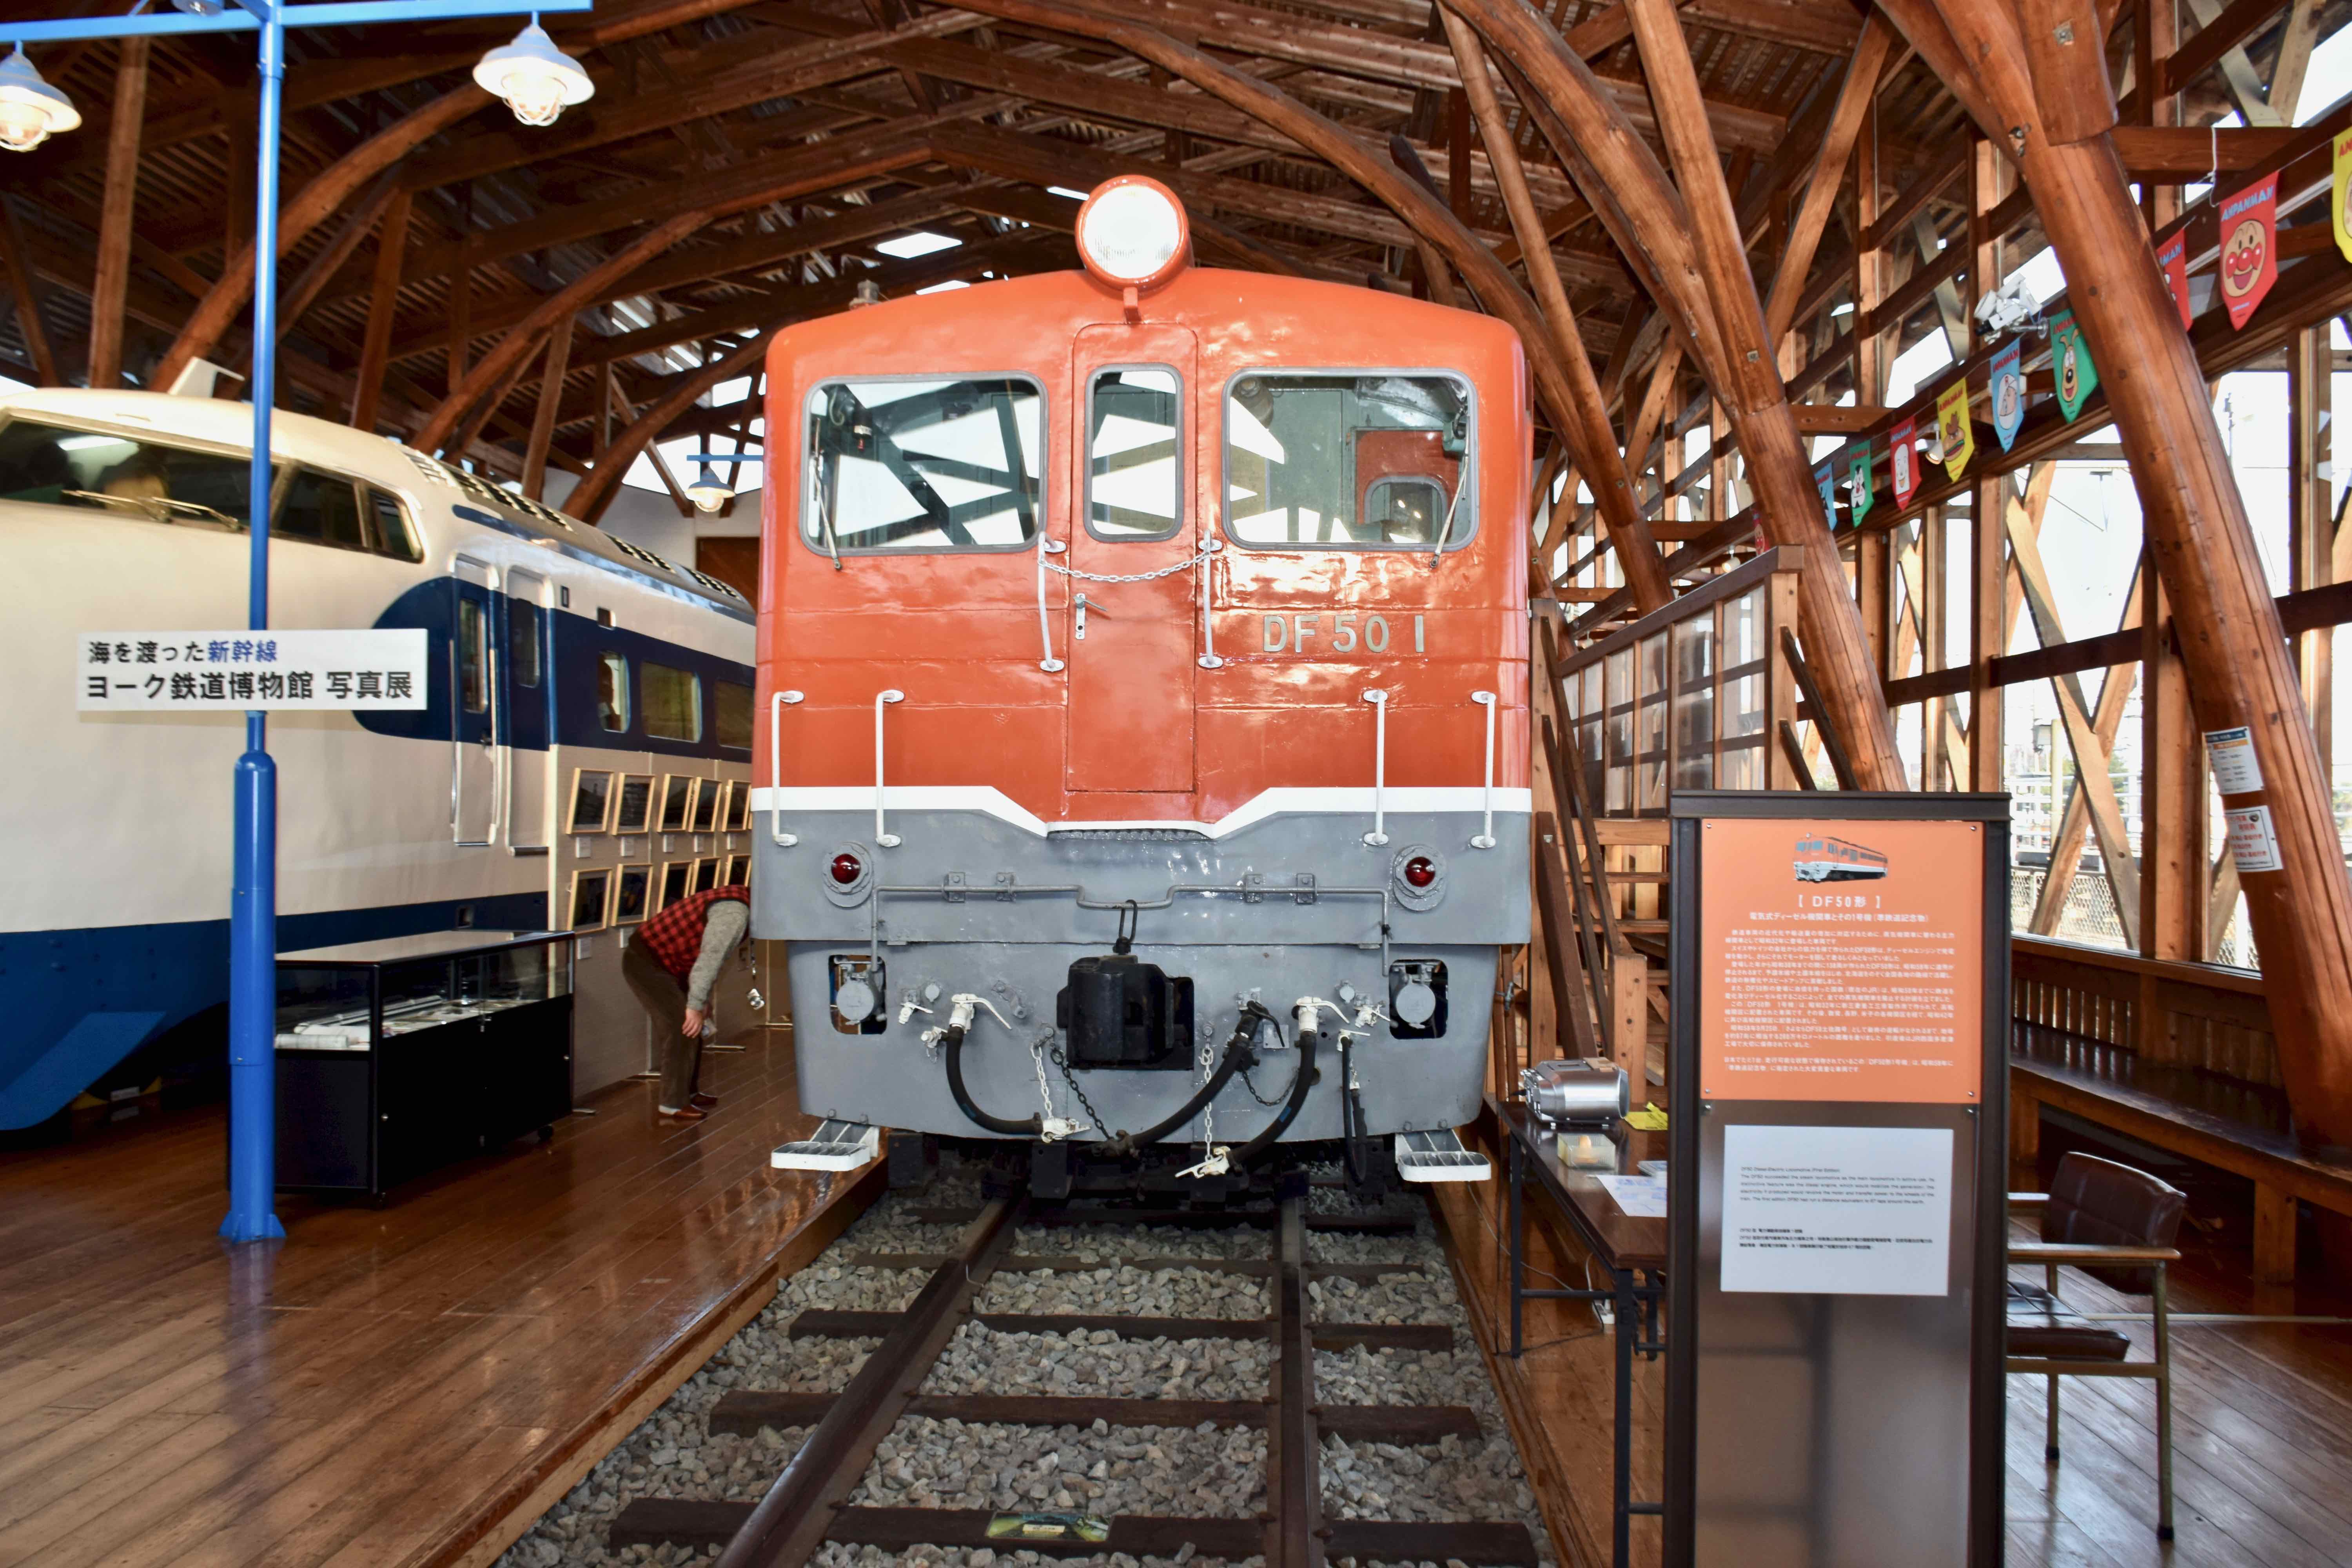 当時の主力蒸気機関車には劣ったが、四国鉄道無煙化を担った国鉄電気式